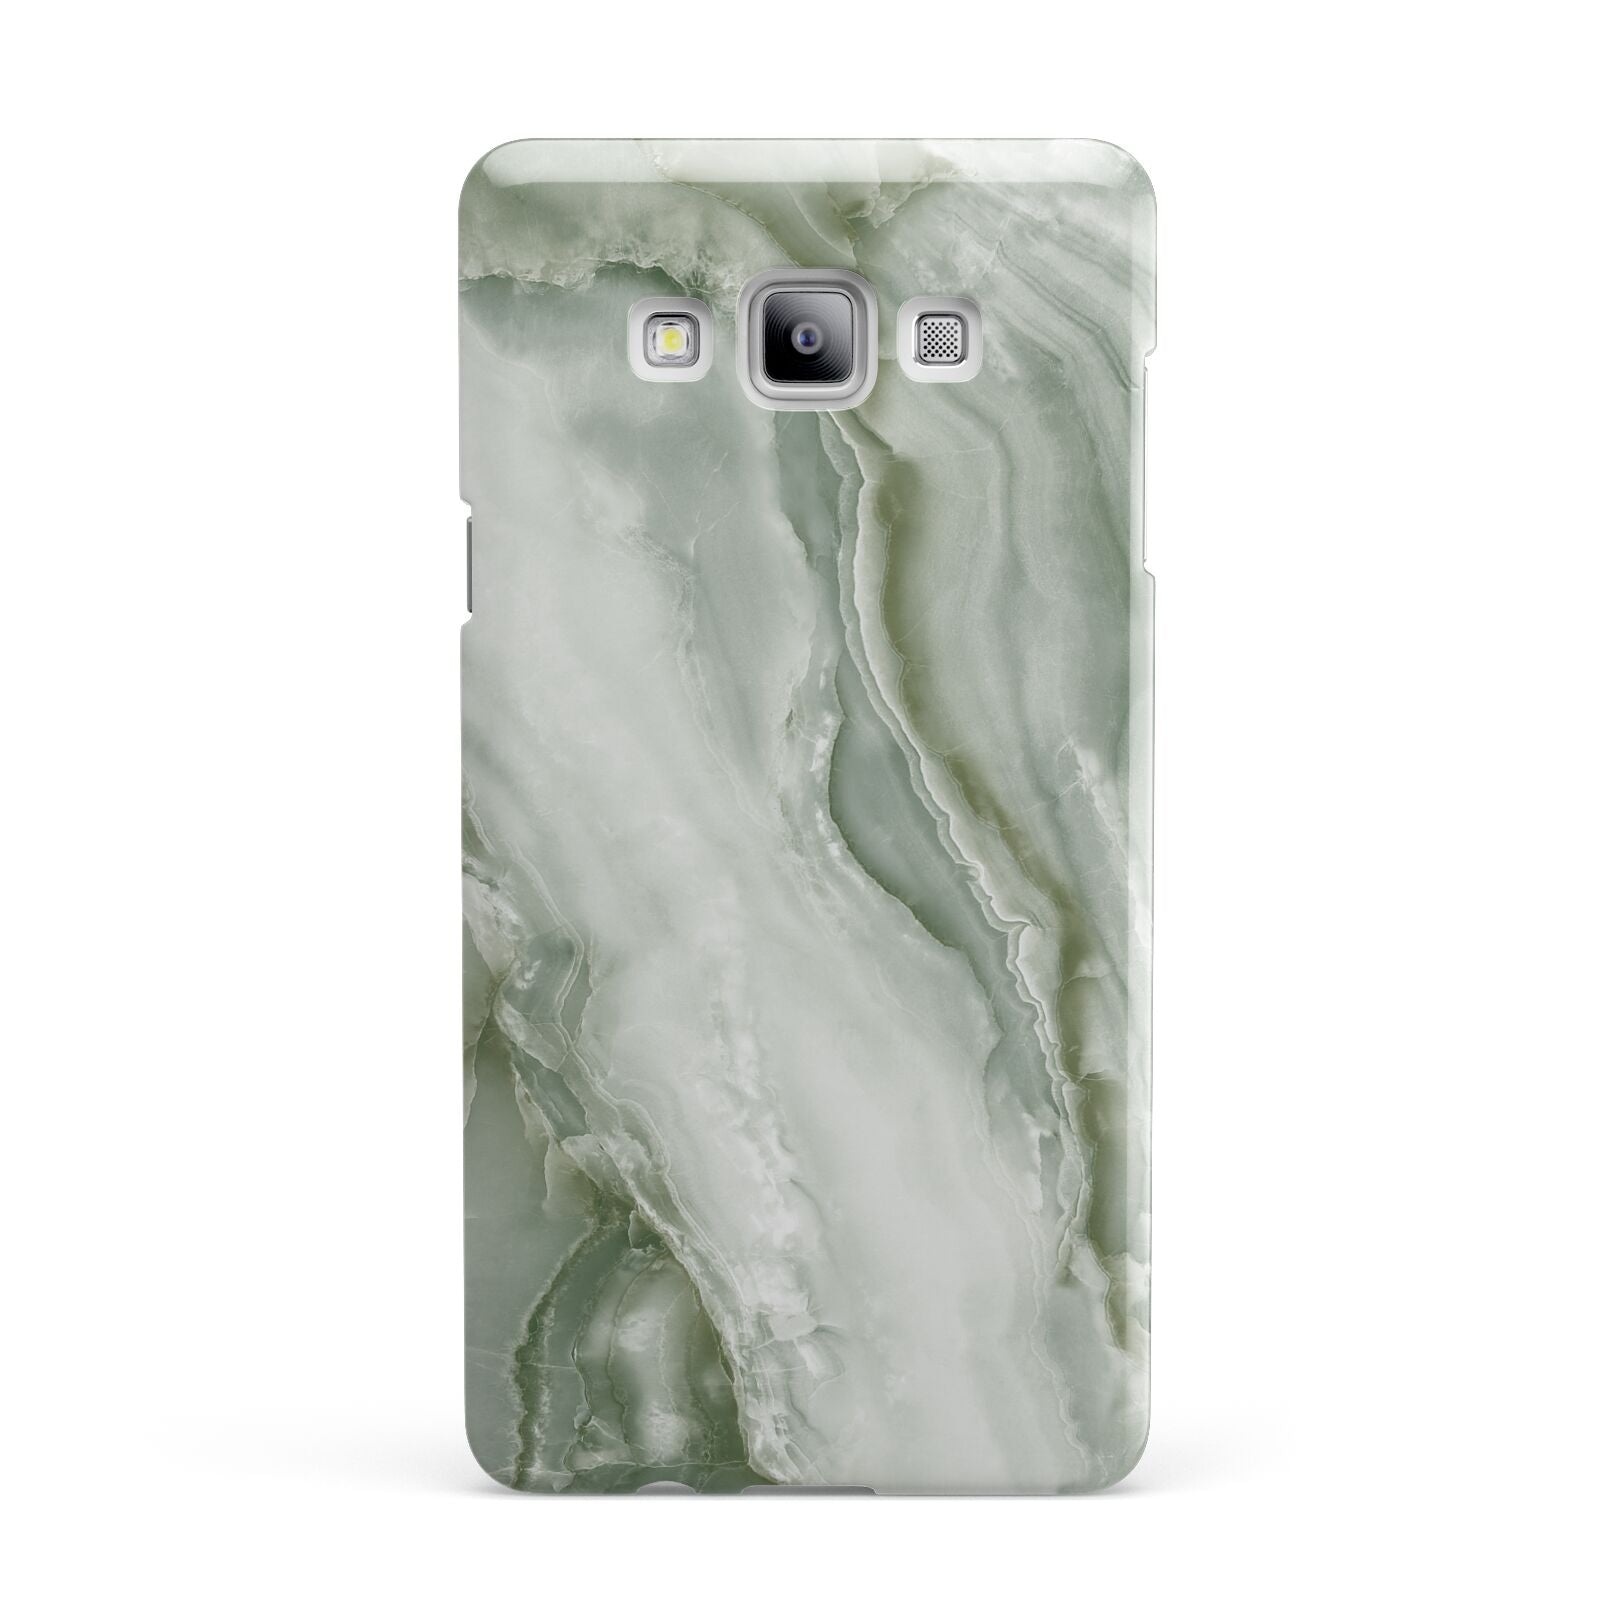 Pistachio Green Marble Samsung Galaxy A7 2015 Case